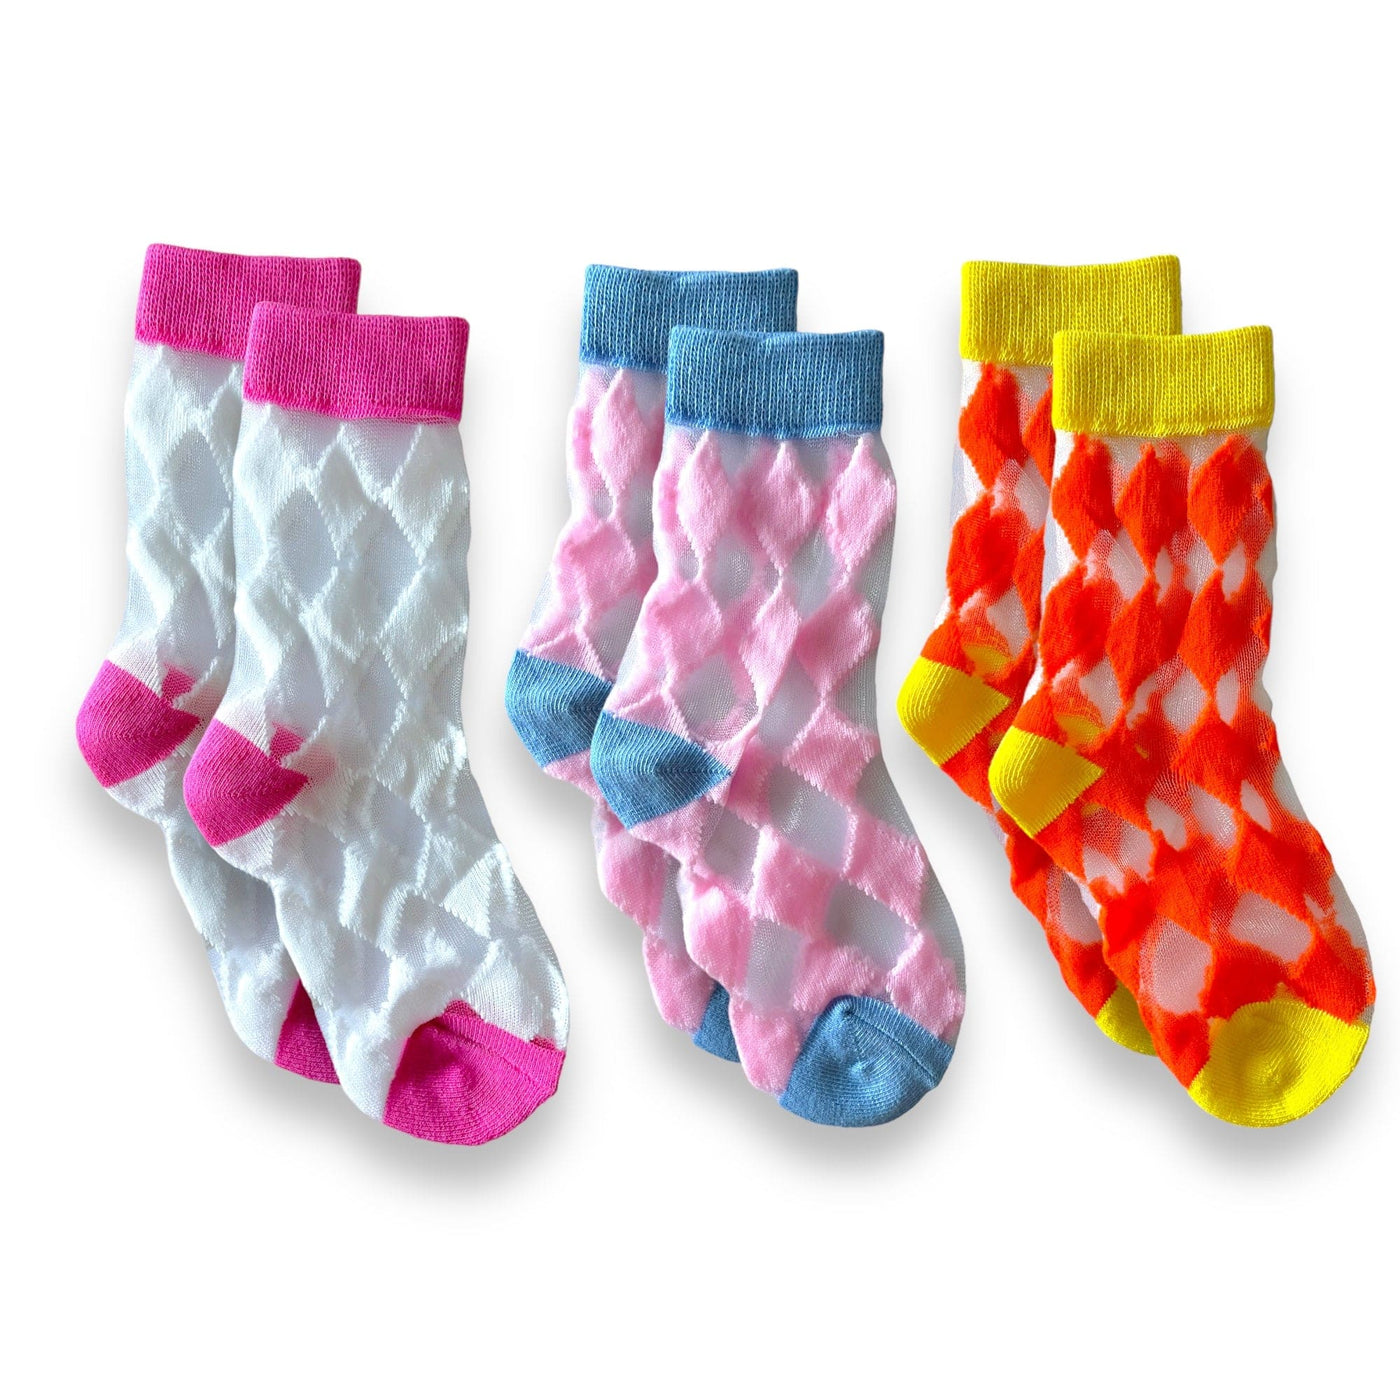 Best Day Ever Kids Socks Color Combo 1 / 1-3yr Happy Harlequin Sock Set buy online boutique kids clothing